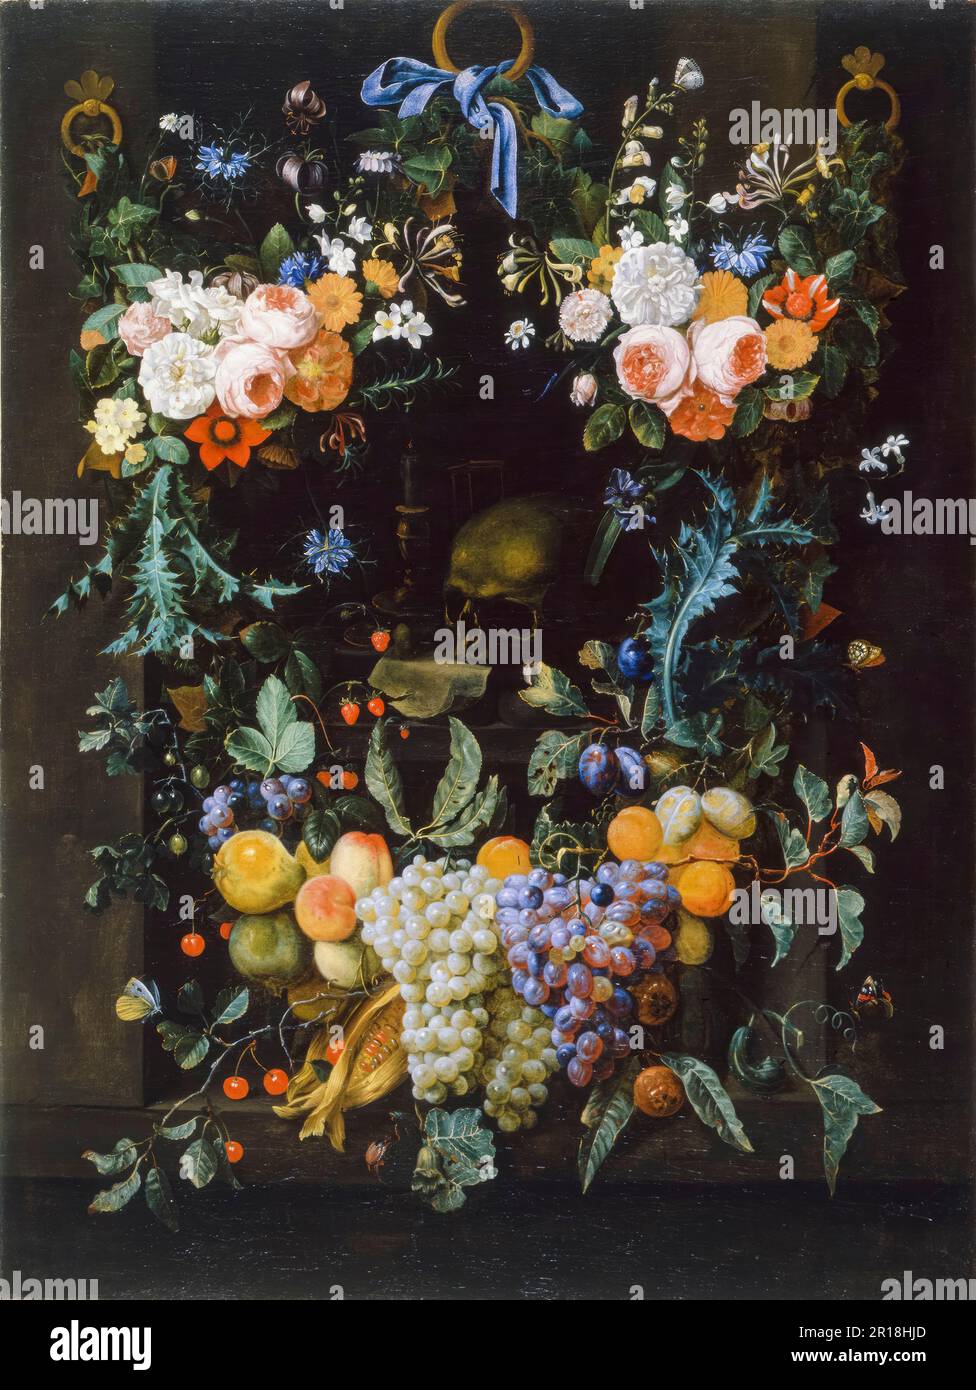 Joris van son, Allegory sur la vie humaine, encore la peinture de la vie dans l'huile sur toile, 1658-1660 Banque D'Images